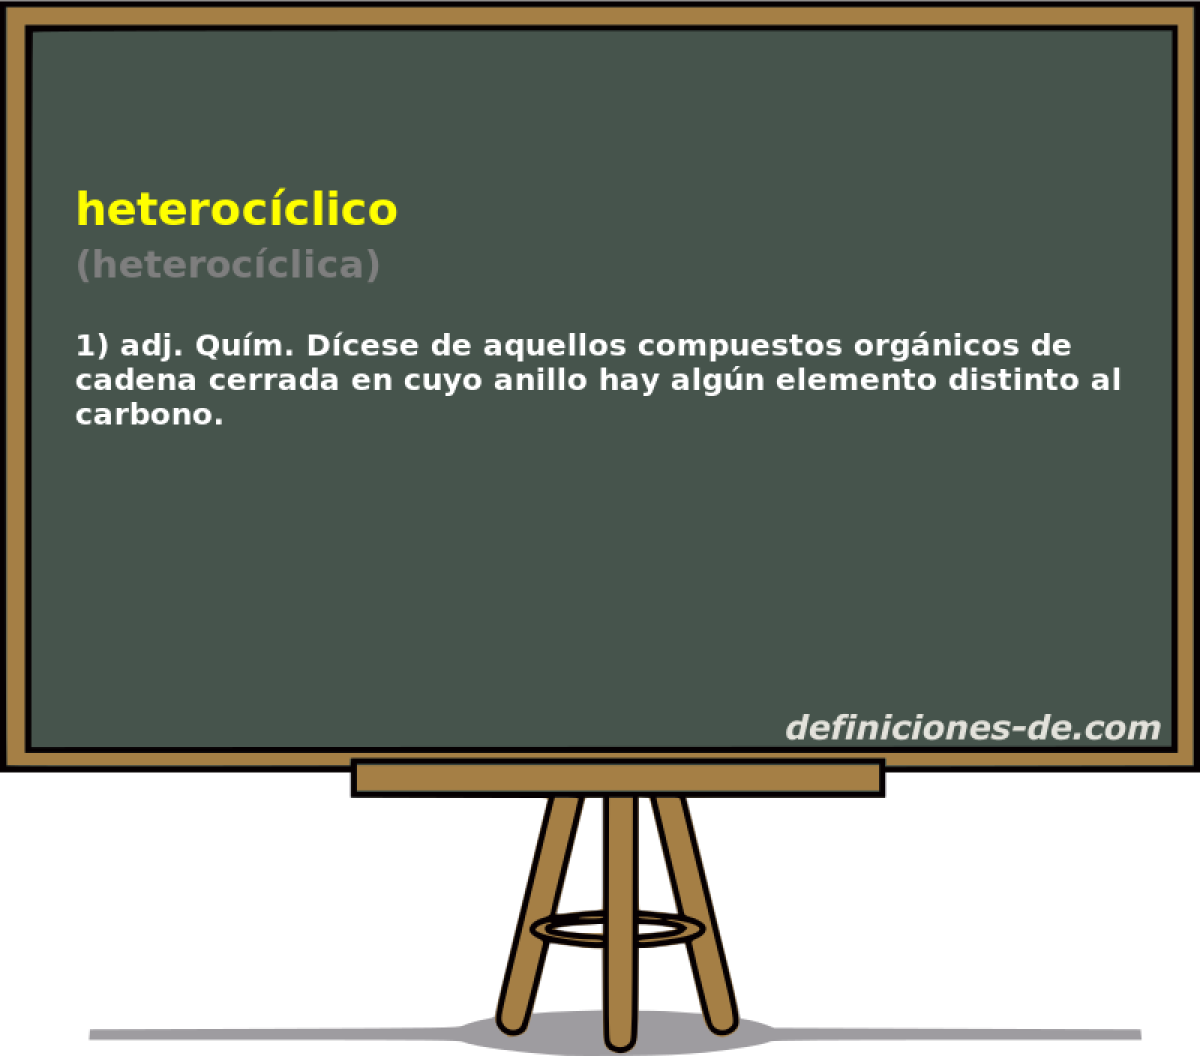 heterocclico (heterocclica)